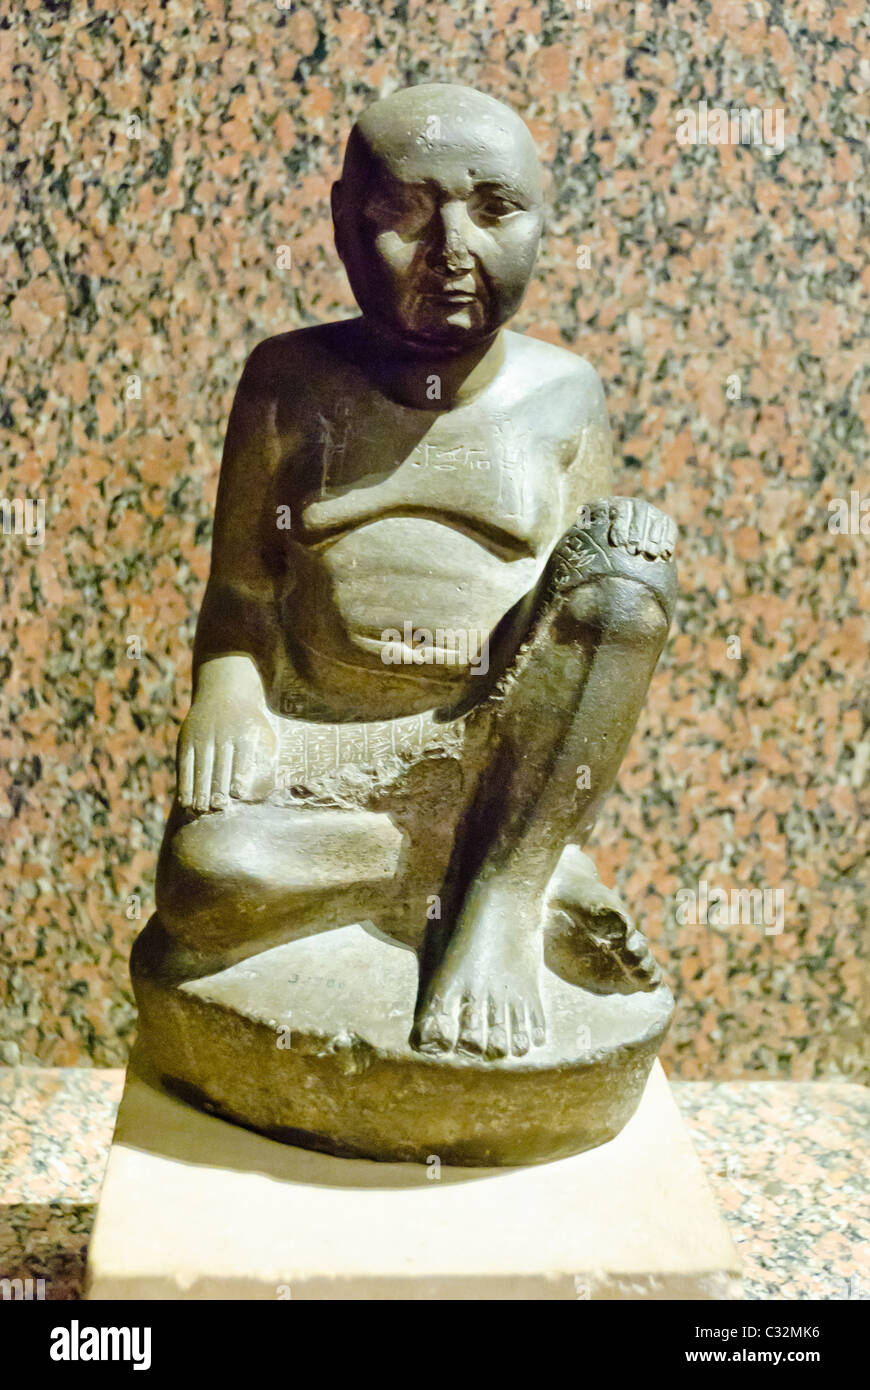 Statua di Harwa, maggiordomo di Amenardis, la divina moglie di Amon - Kushite arte - scisto - XXV dinastia - Karnak. Museo Nubiano, Aswan, Alto Egitto Foto Stock